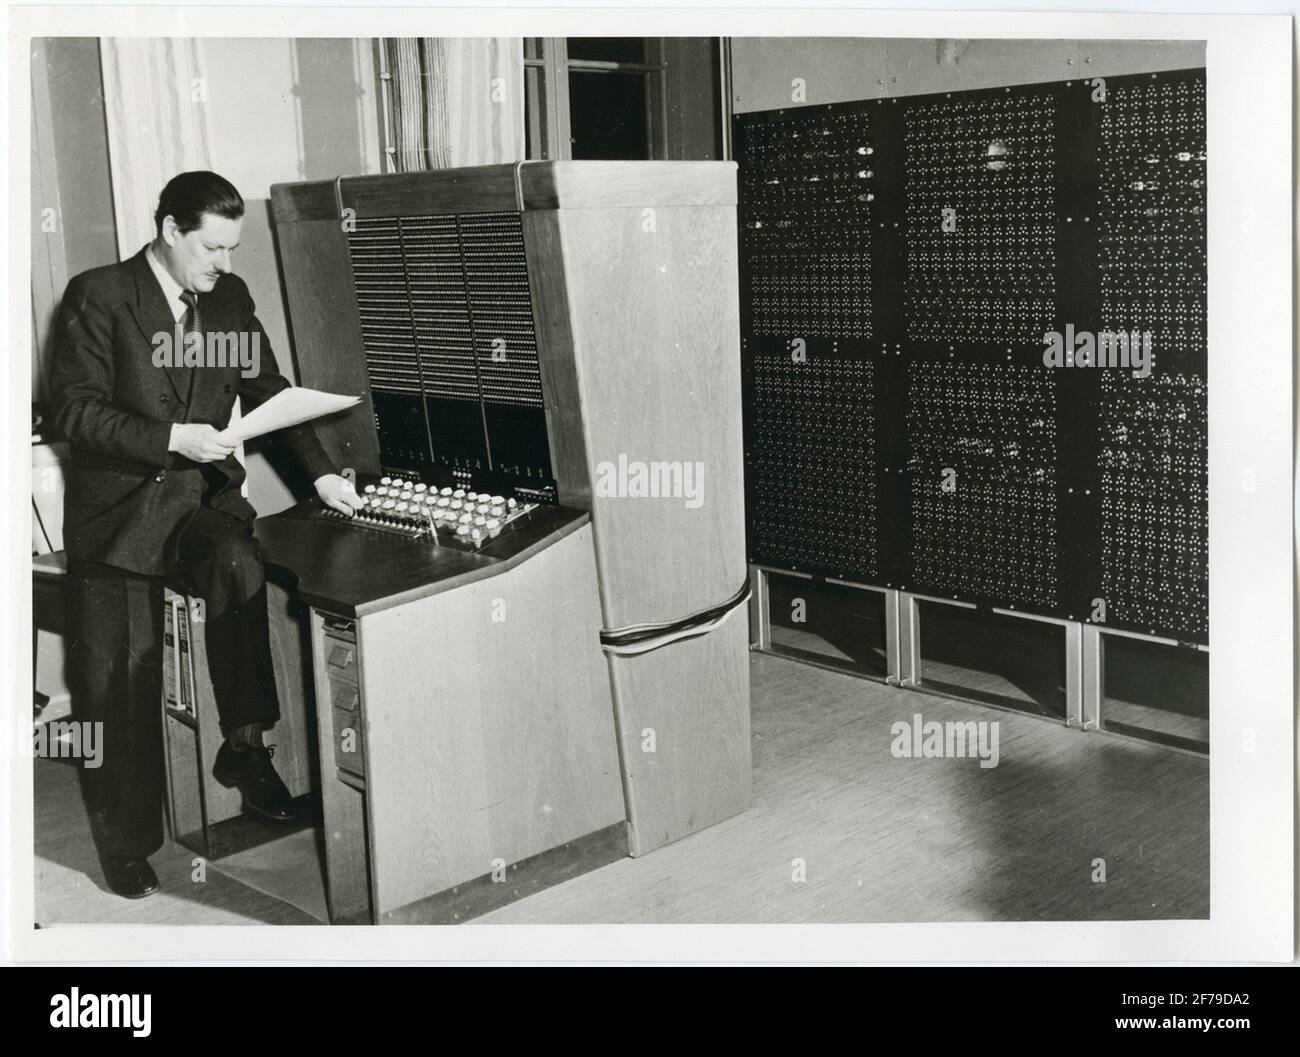 Bildunterschrift: Der Techniker Dr. Conny Palm vor ihm baute die Mathematikmaschine wenige Monate vor seinem Tod im Dezember 1951 Rinde. Conny Palm konstruierte den binären arithmetischen Relay Calculator (Bark). Es wurde in der Richtung des Mathematics Mask Committee gebaut und wurde in den Jahren 1950-1952 verwendet. Da es jedoch mit Relais arbeitete, war es zu langsam und wurde 1953 durch einen binären elektronischen Sequenzrechner (Bitter) ersetzt. (Von der schwedischen Telekom-Vorstand in den Jahren 1946-1965, wir Band) Stockfoto